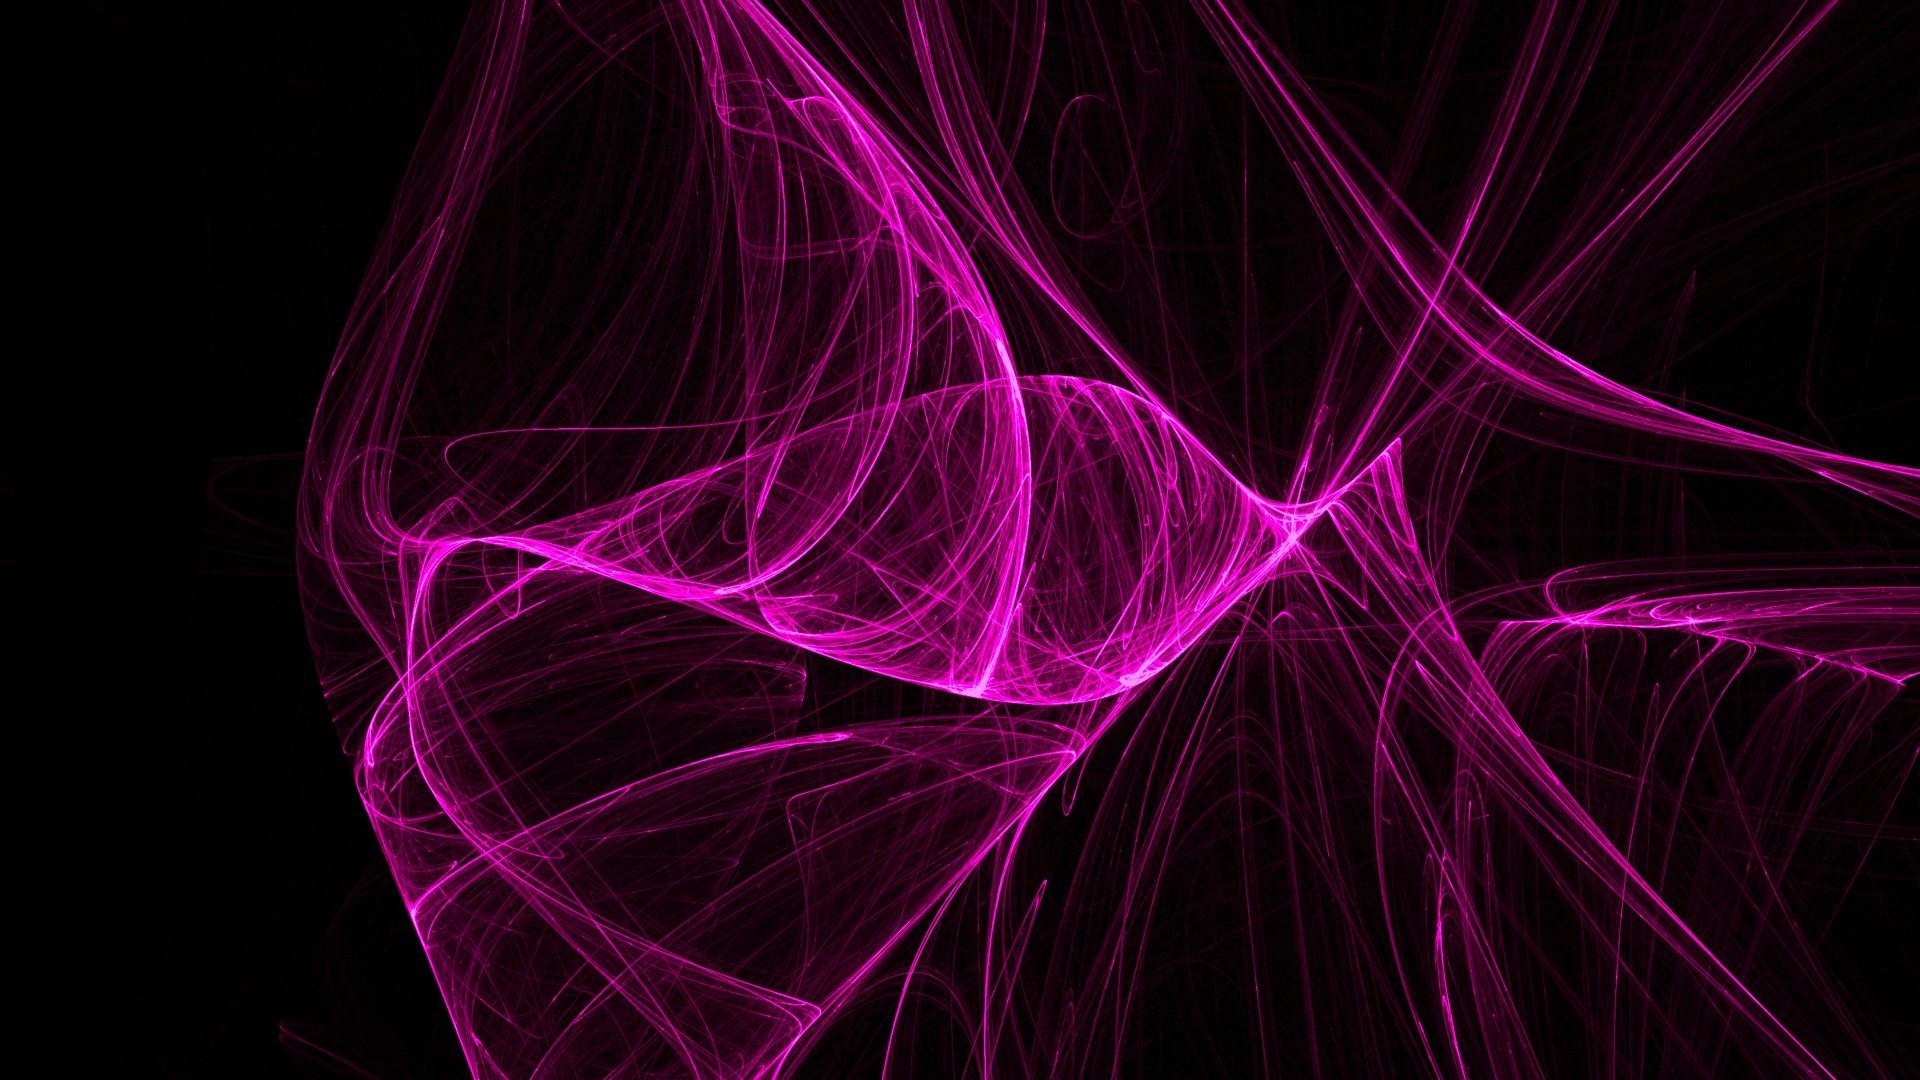 Bộ sưu tập hình nền HD màu hồng độc đáo với nhiều kiểu dáng và phông chữ khác nhau. Các hình nền sử dụng màu hồng tươi sáng và đậm nét để tạo thành các bức ảnh hoàn hảo, đồng thời làm nổi bật chiếc máy tính của bạn.